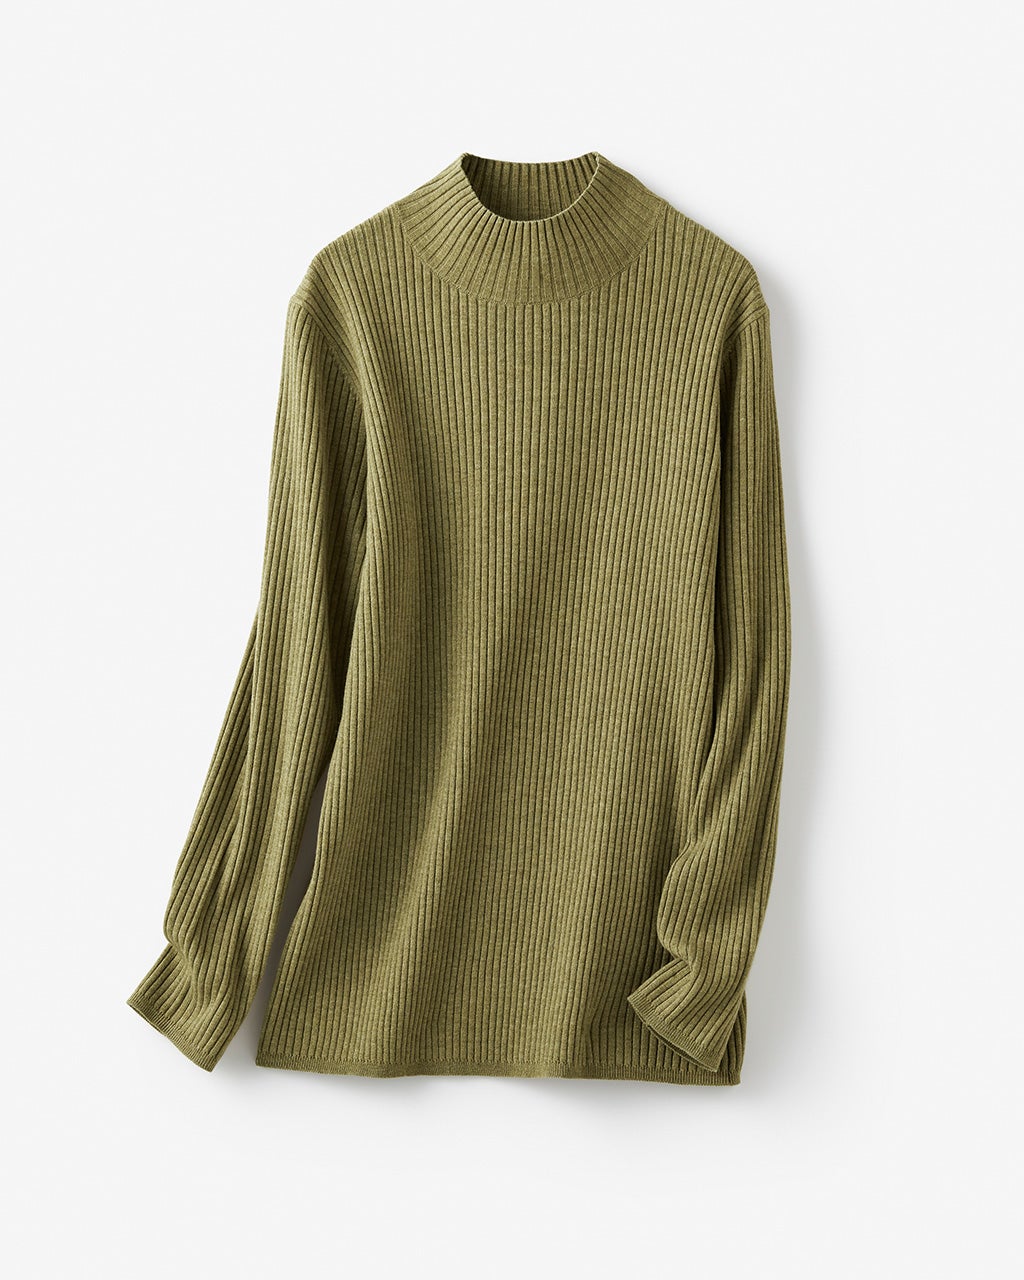 リブ編み・ハイネックセーター/40代50代からのレディース・メンズ